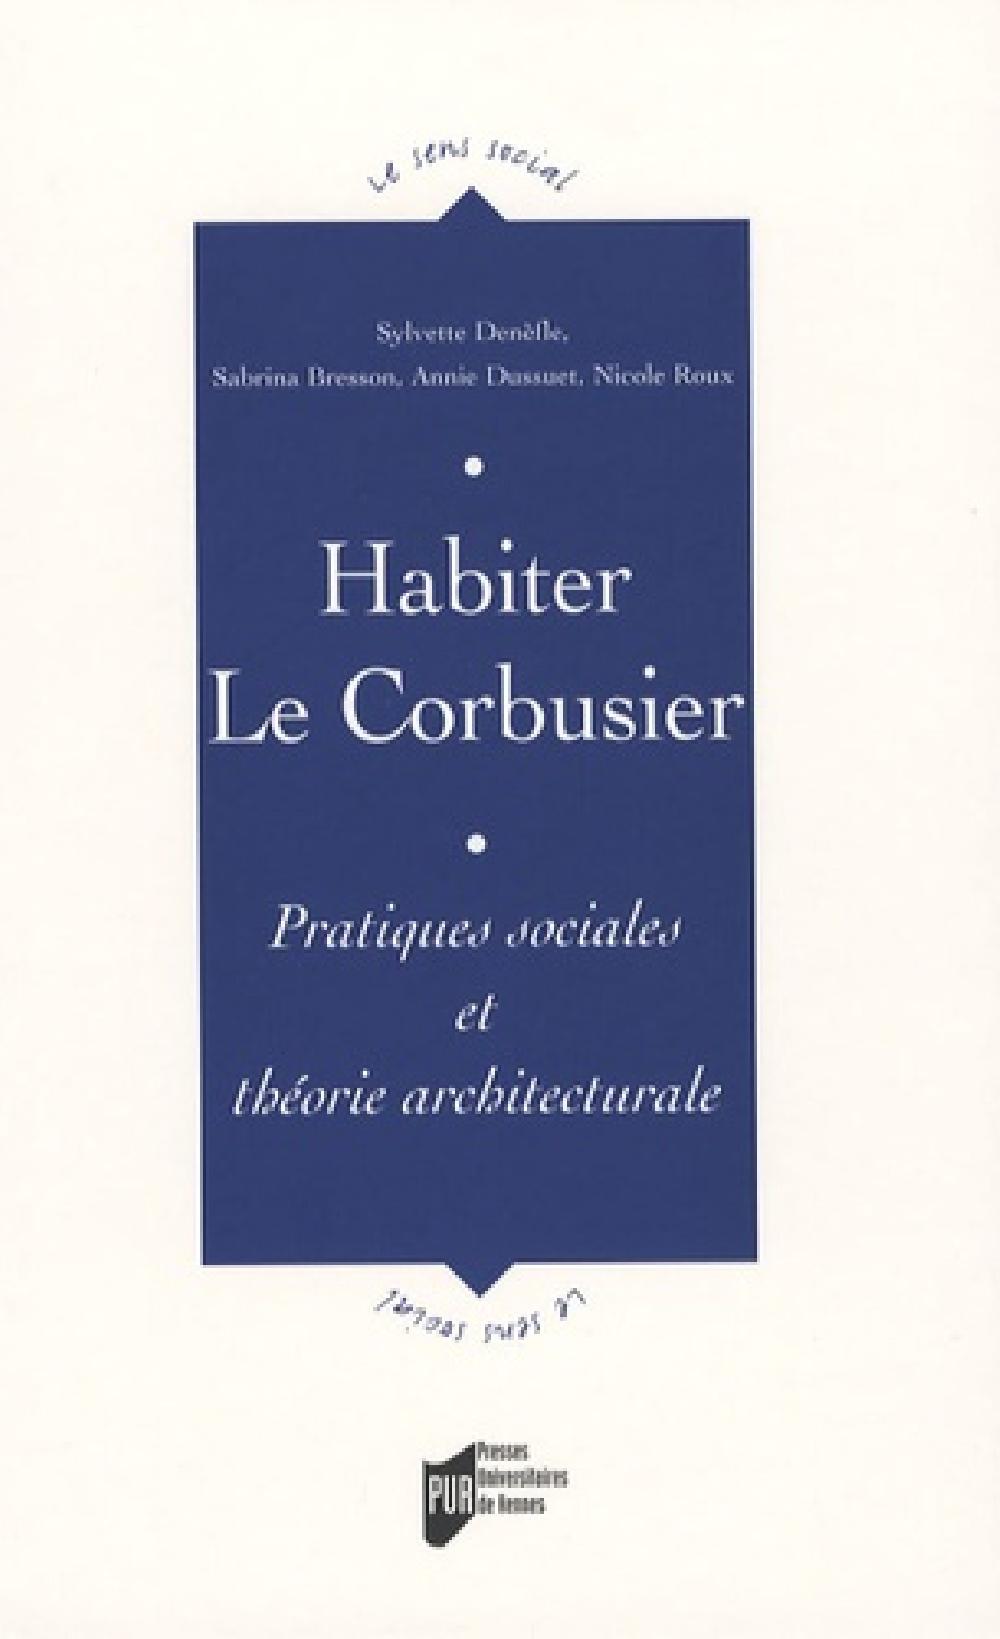 Habiter Le Corbusier - Pratiques sociales et théorie architecturale